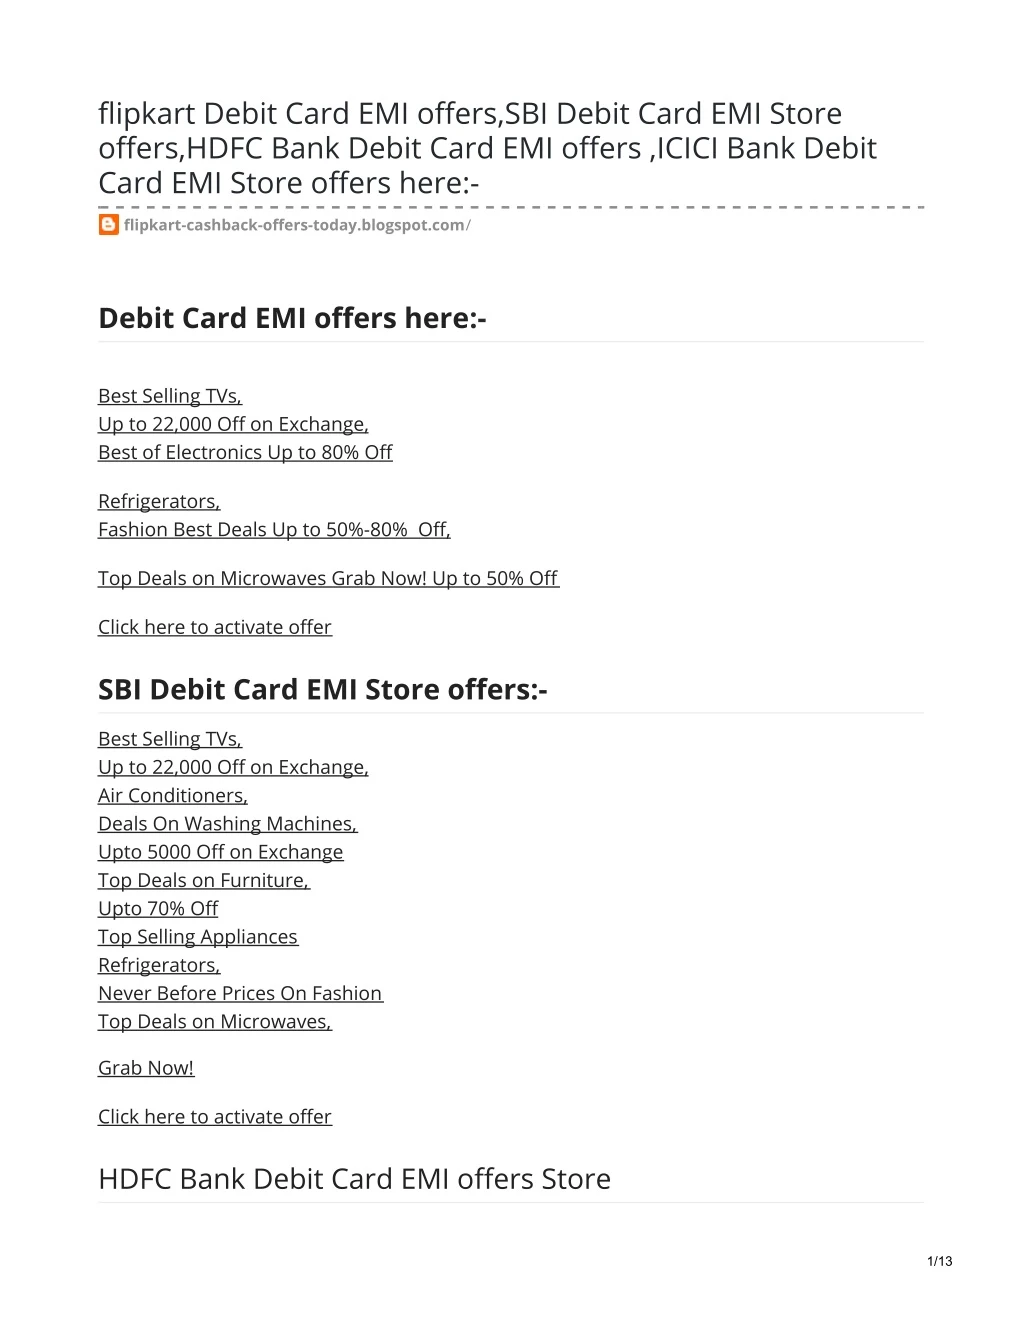 flipkart debit card emi offers sbi debit card